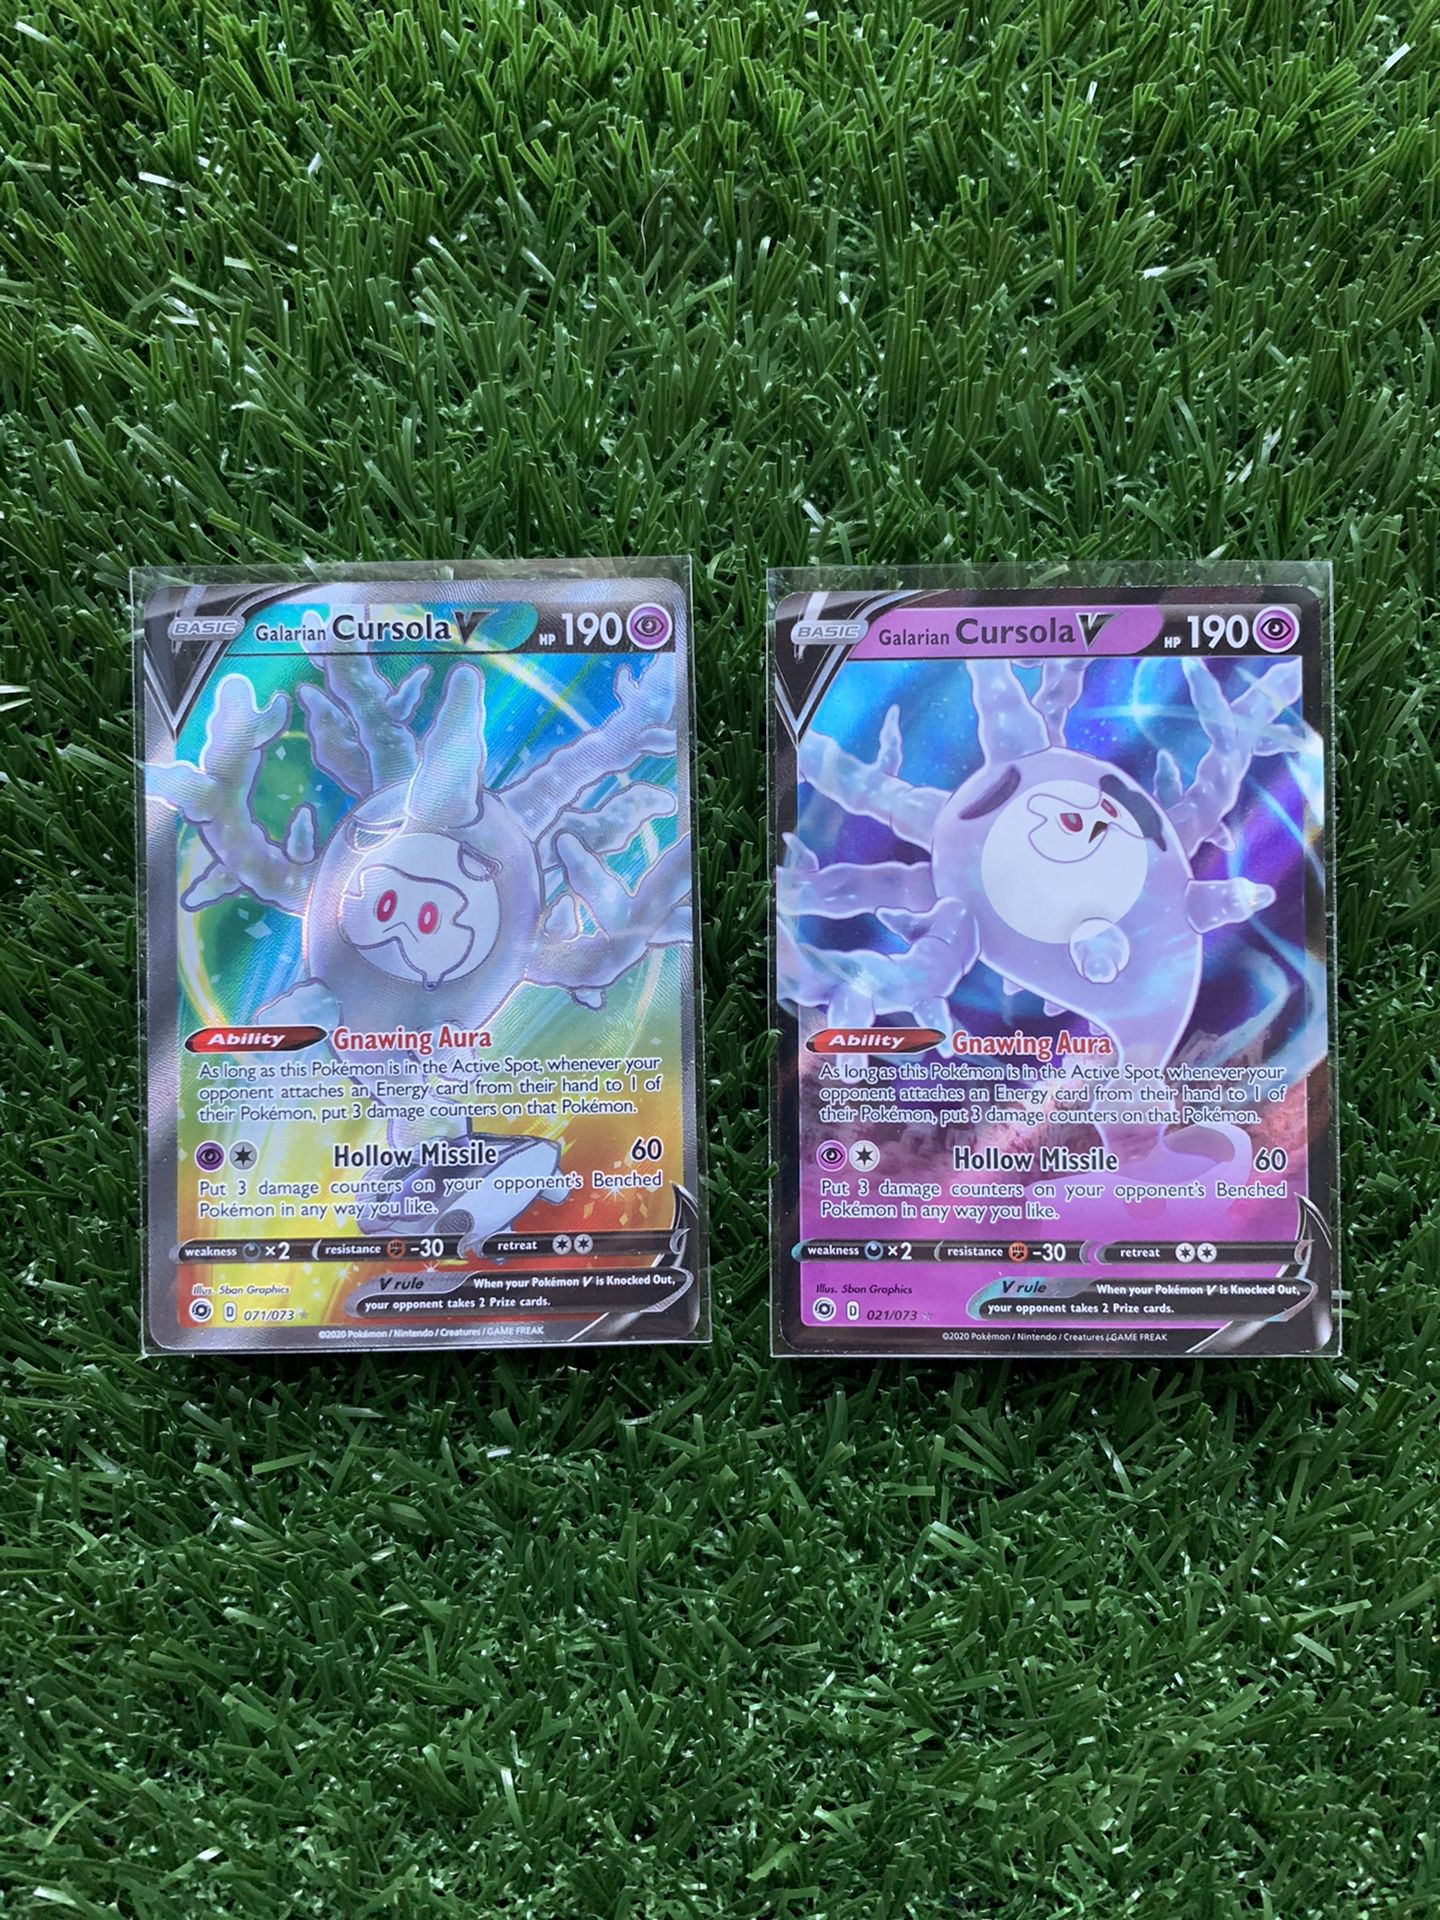 MINT Pokémon Card Galarian Cursola V 071/072 and 021/073